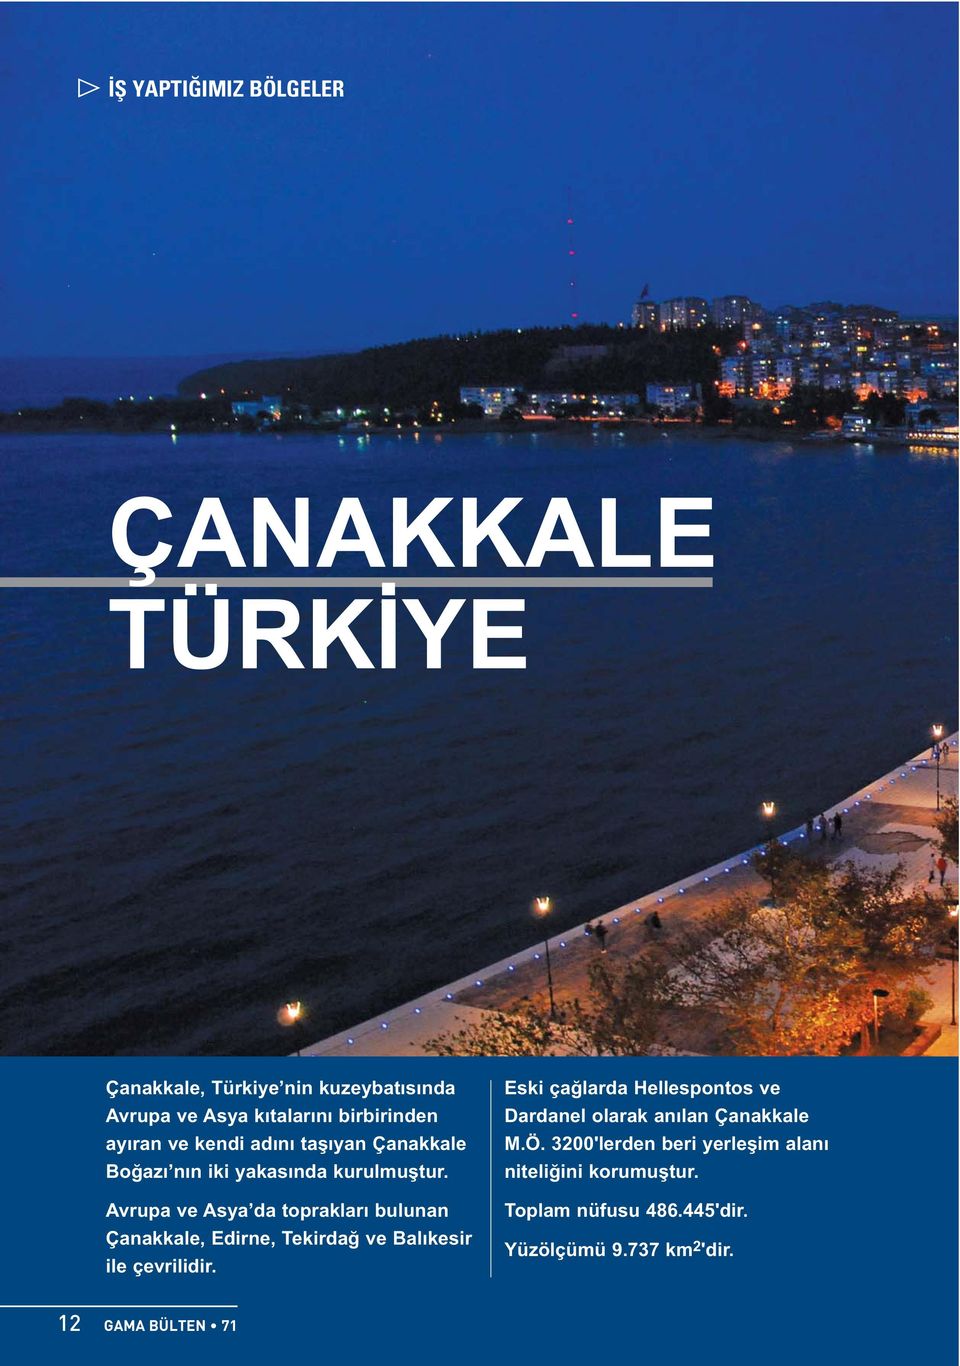 Avrupa ve Asya da toprakları bulunan Çanakkale, Edirne, Tekirdağ ve Balıkesir ile çevrilidir.